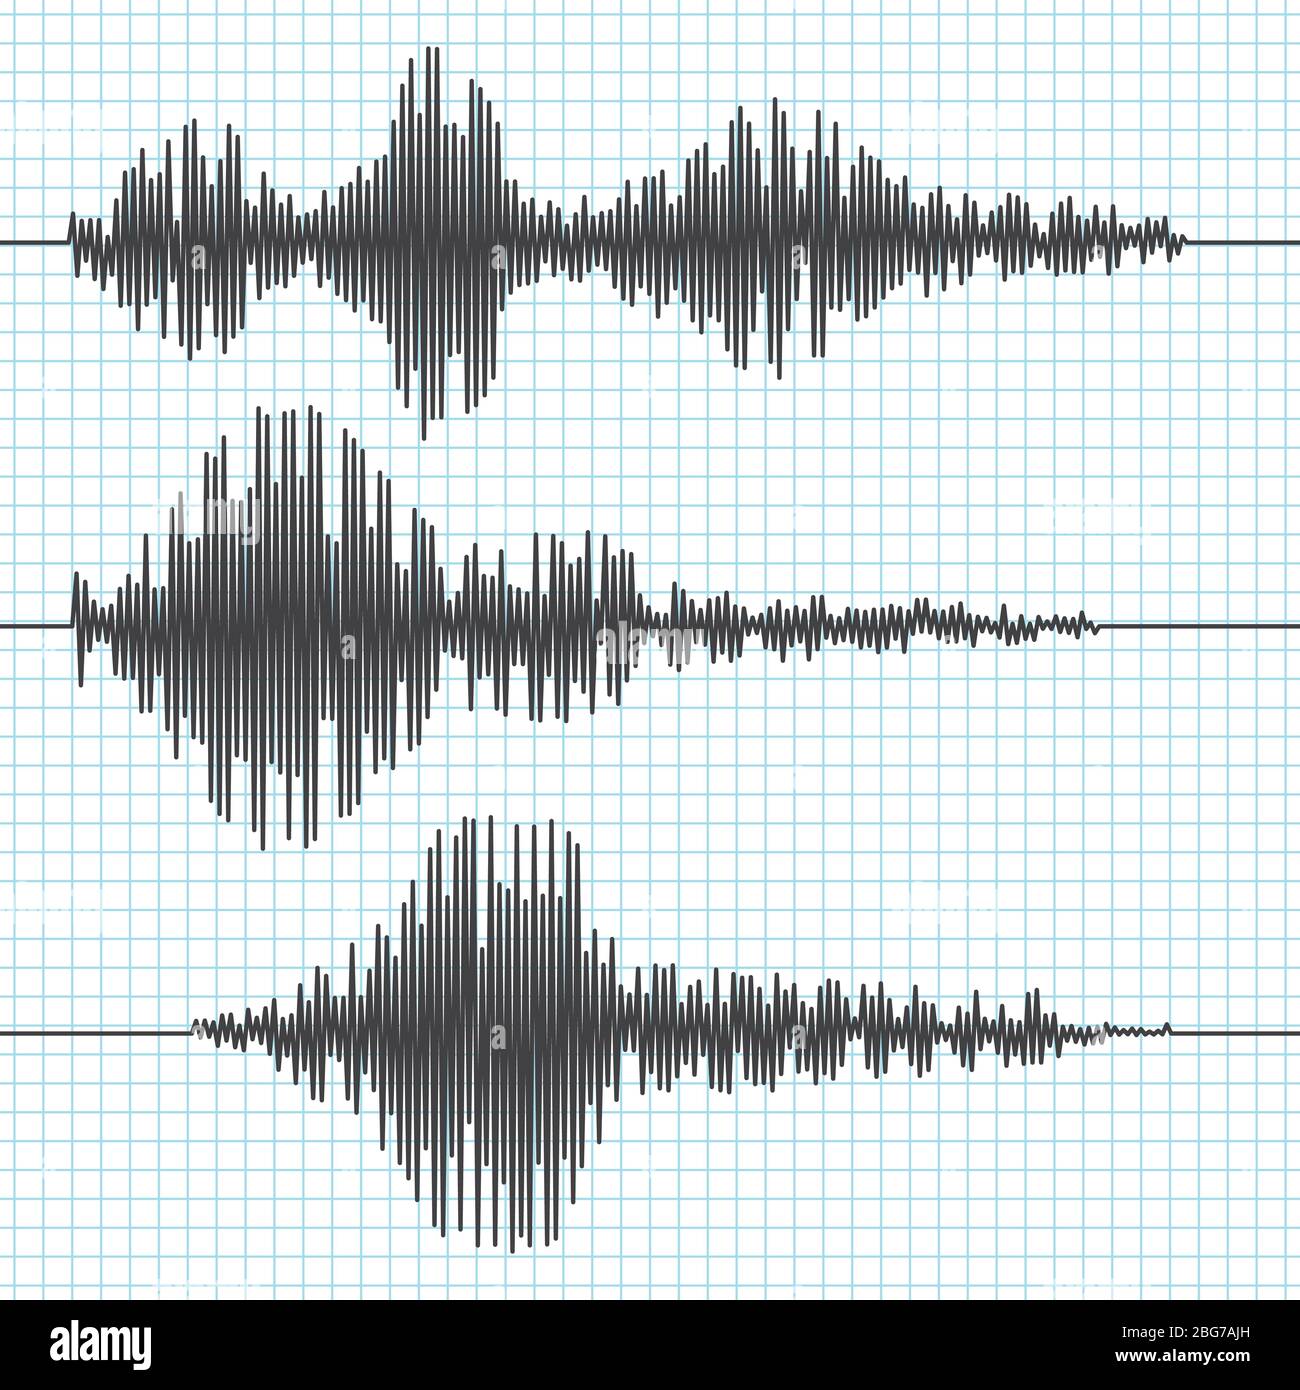 Frequenz Seismografen Wellen, Seismogramm, Erdbeben-Graphen. Seismische Wellenvektoren gesetzt. Abbildung des Schwingungs-Seismometer-Diagramms, Wellenformaufzeichnung Stock Vektor